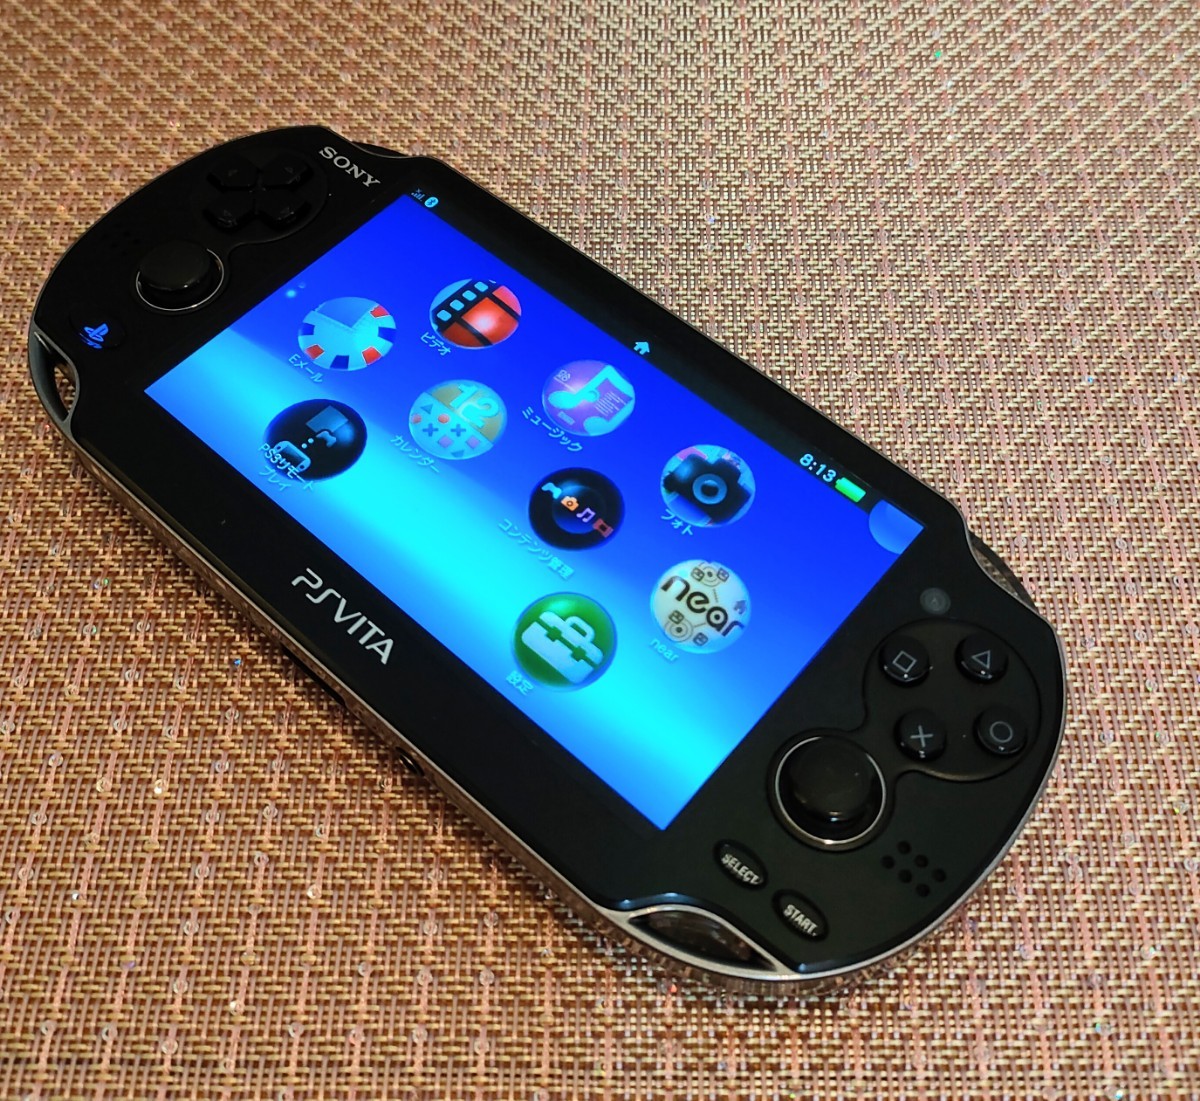 PlayStation Vita PCH-1100 3G/Wi-Fiモデル クリスタル・ブラック 初回限定版